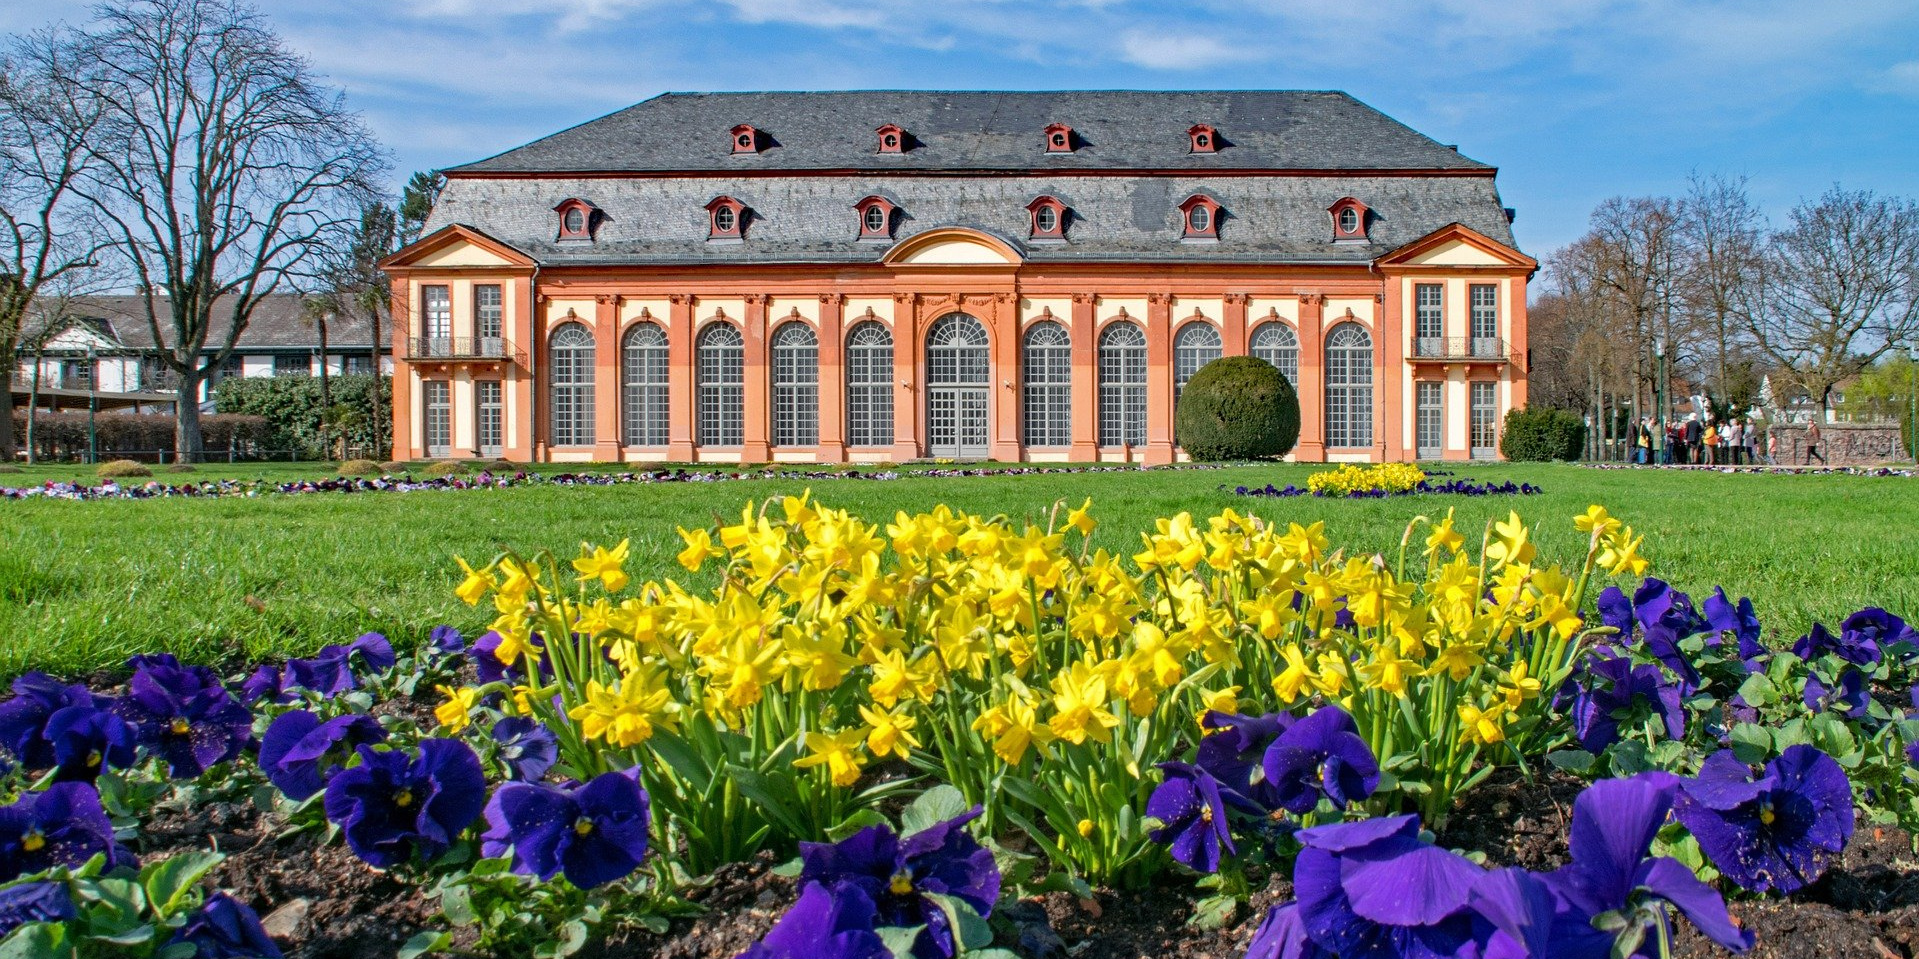 Bild von der Orangerie in Darmstadt und im Vordergrund blühen schöne Blumen